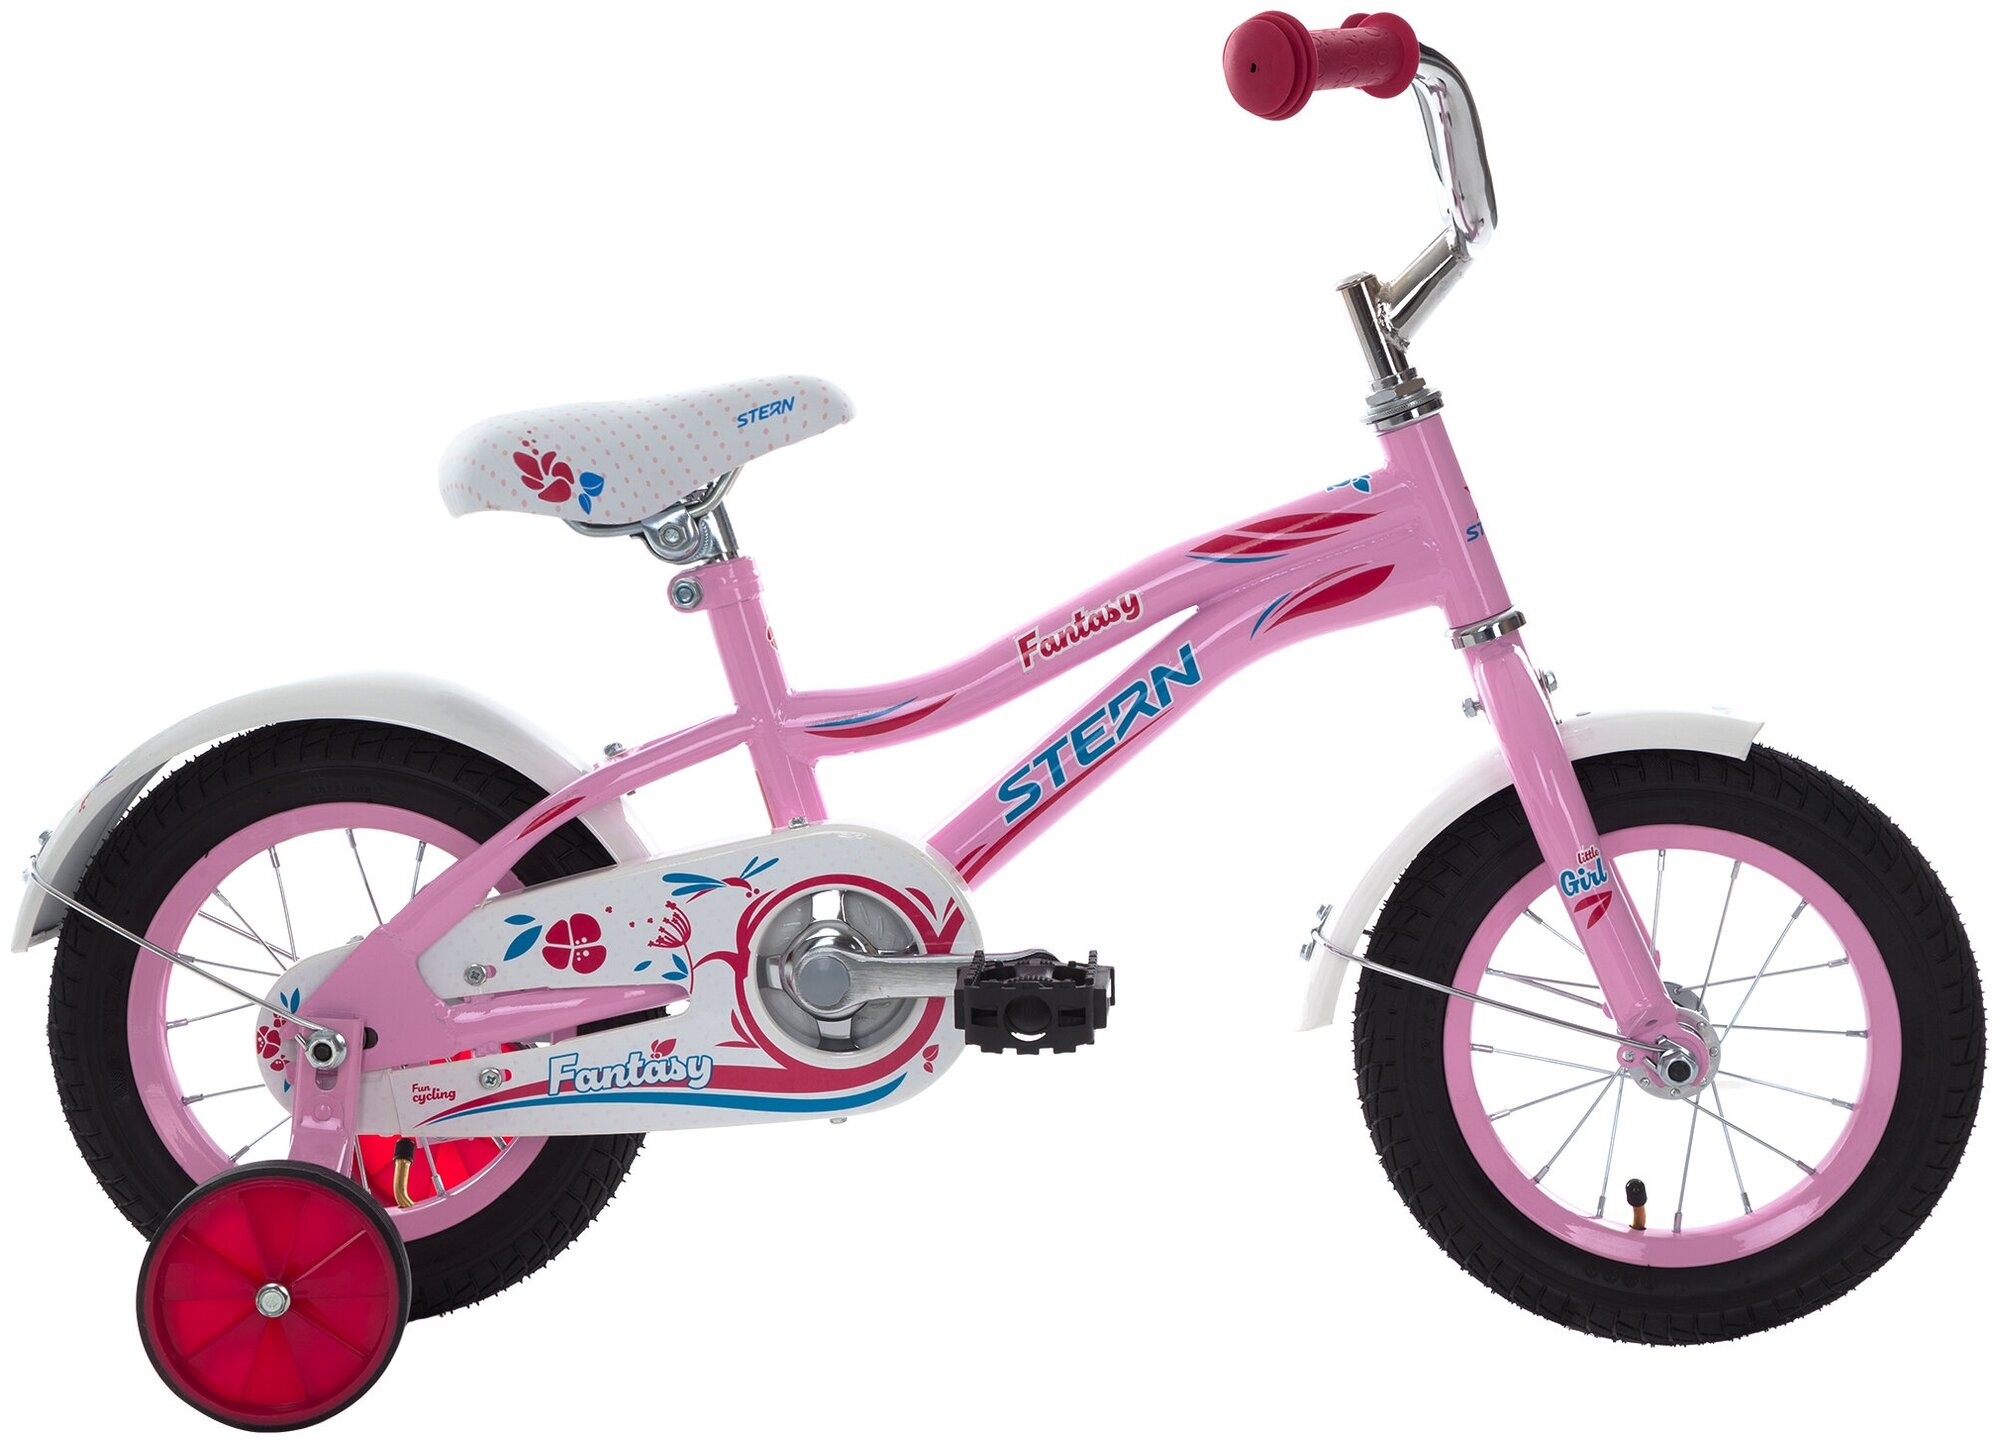 Велосипед STERN Fantasy 12 городской (детский), колеса 12", розовый/белый, 8.9кг [s21estbb026-kw]